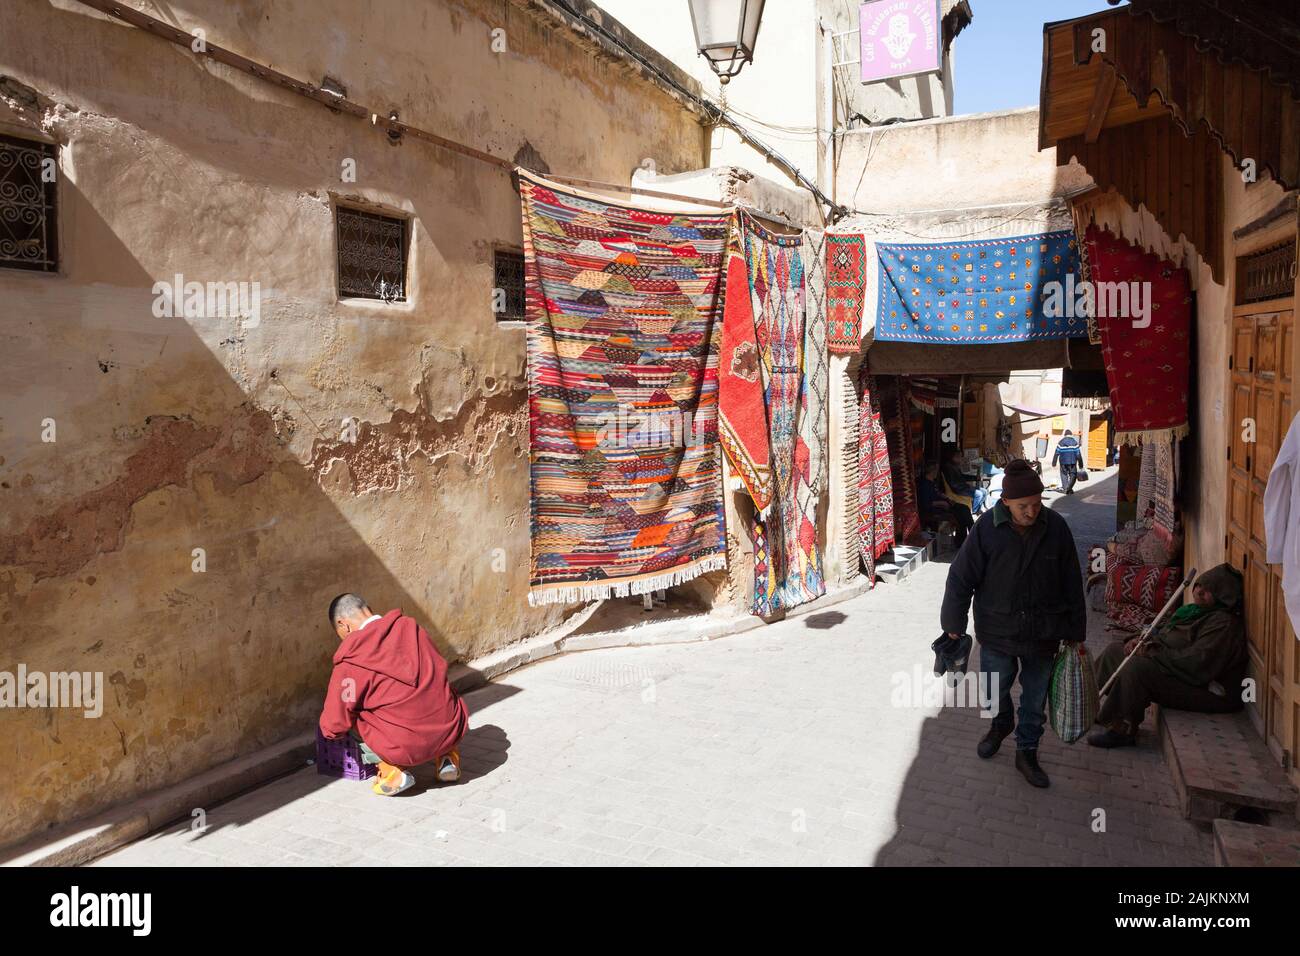 Tapis colorés accrochés dans la rue de Fes El Bali à Fes (également connu sous le nom de Fez), au Maroc Banque D'Images